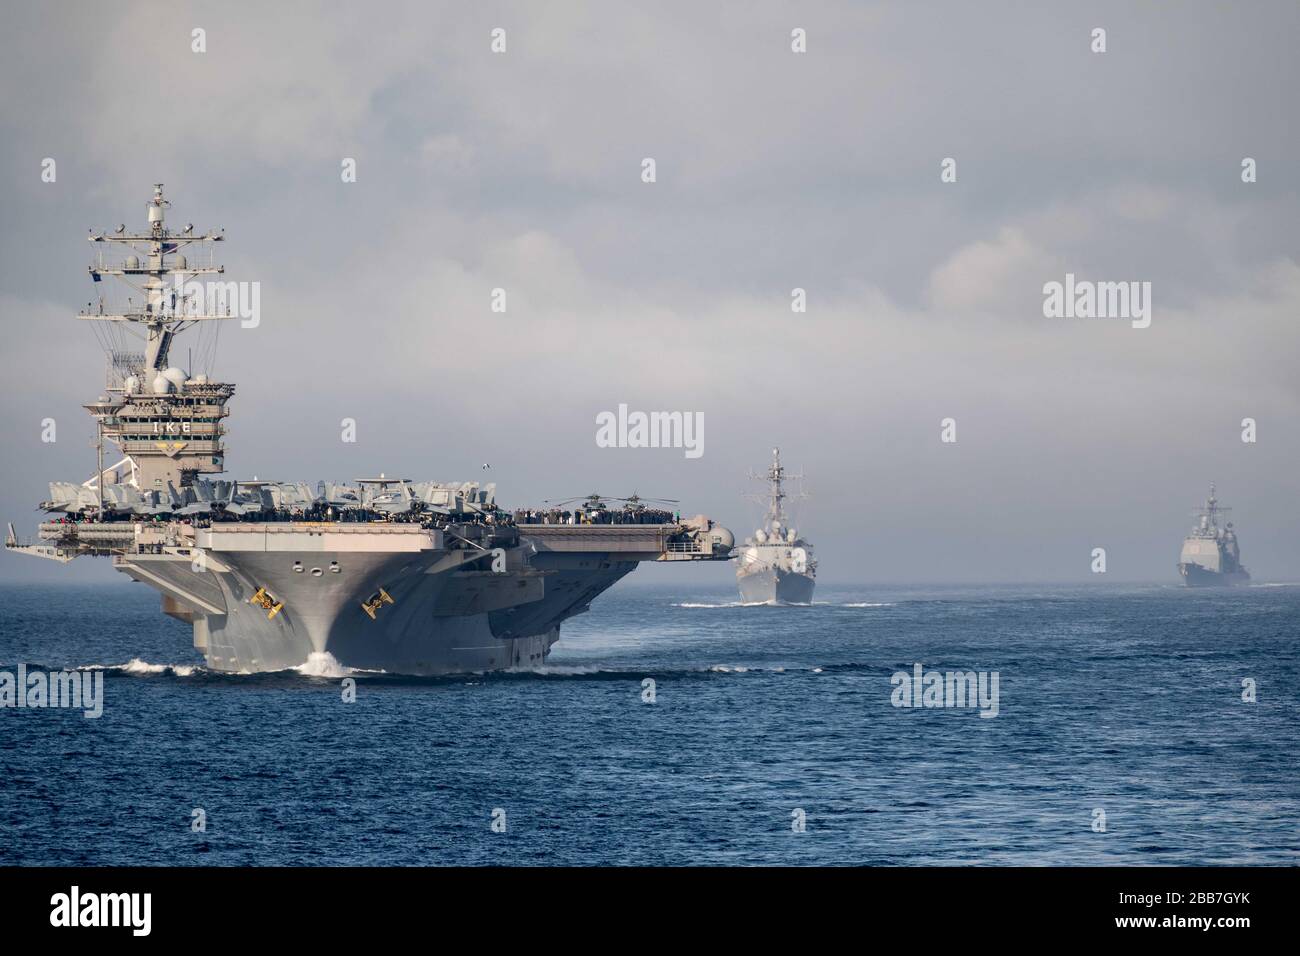 La nave portaerei della classe Nimitz della marina statunitense USS Dwight D. Eisenhower con il cacciatorpediniere USS Truxtun, di classe Arleigh Burke, transita nello stretto di Gibilterra il 9 marzo 2020 nel Mar Mediterraneo. Foto Stock